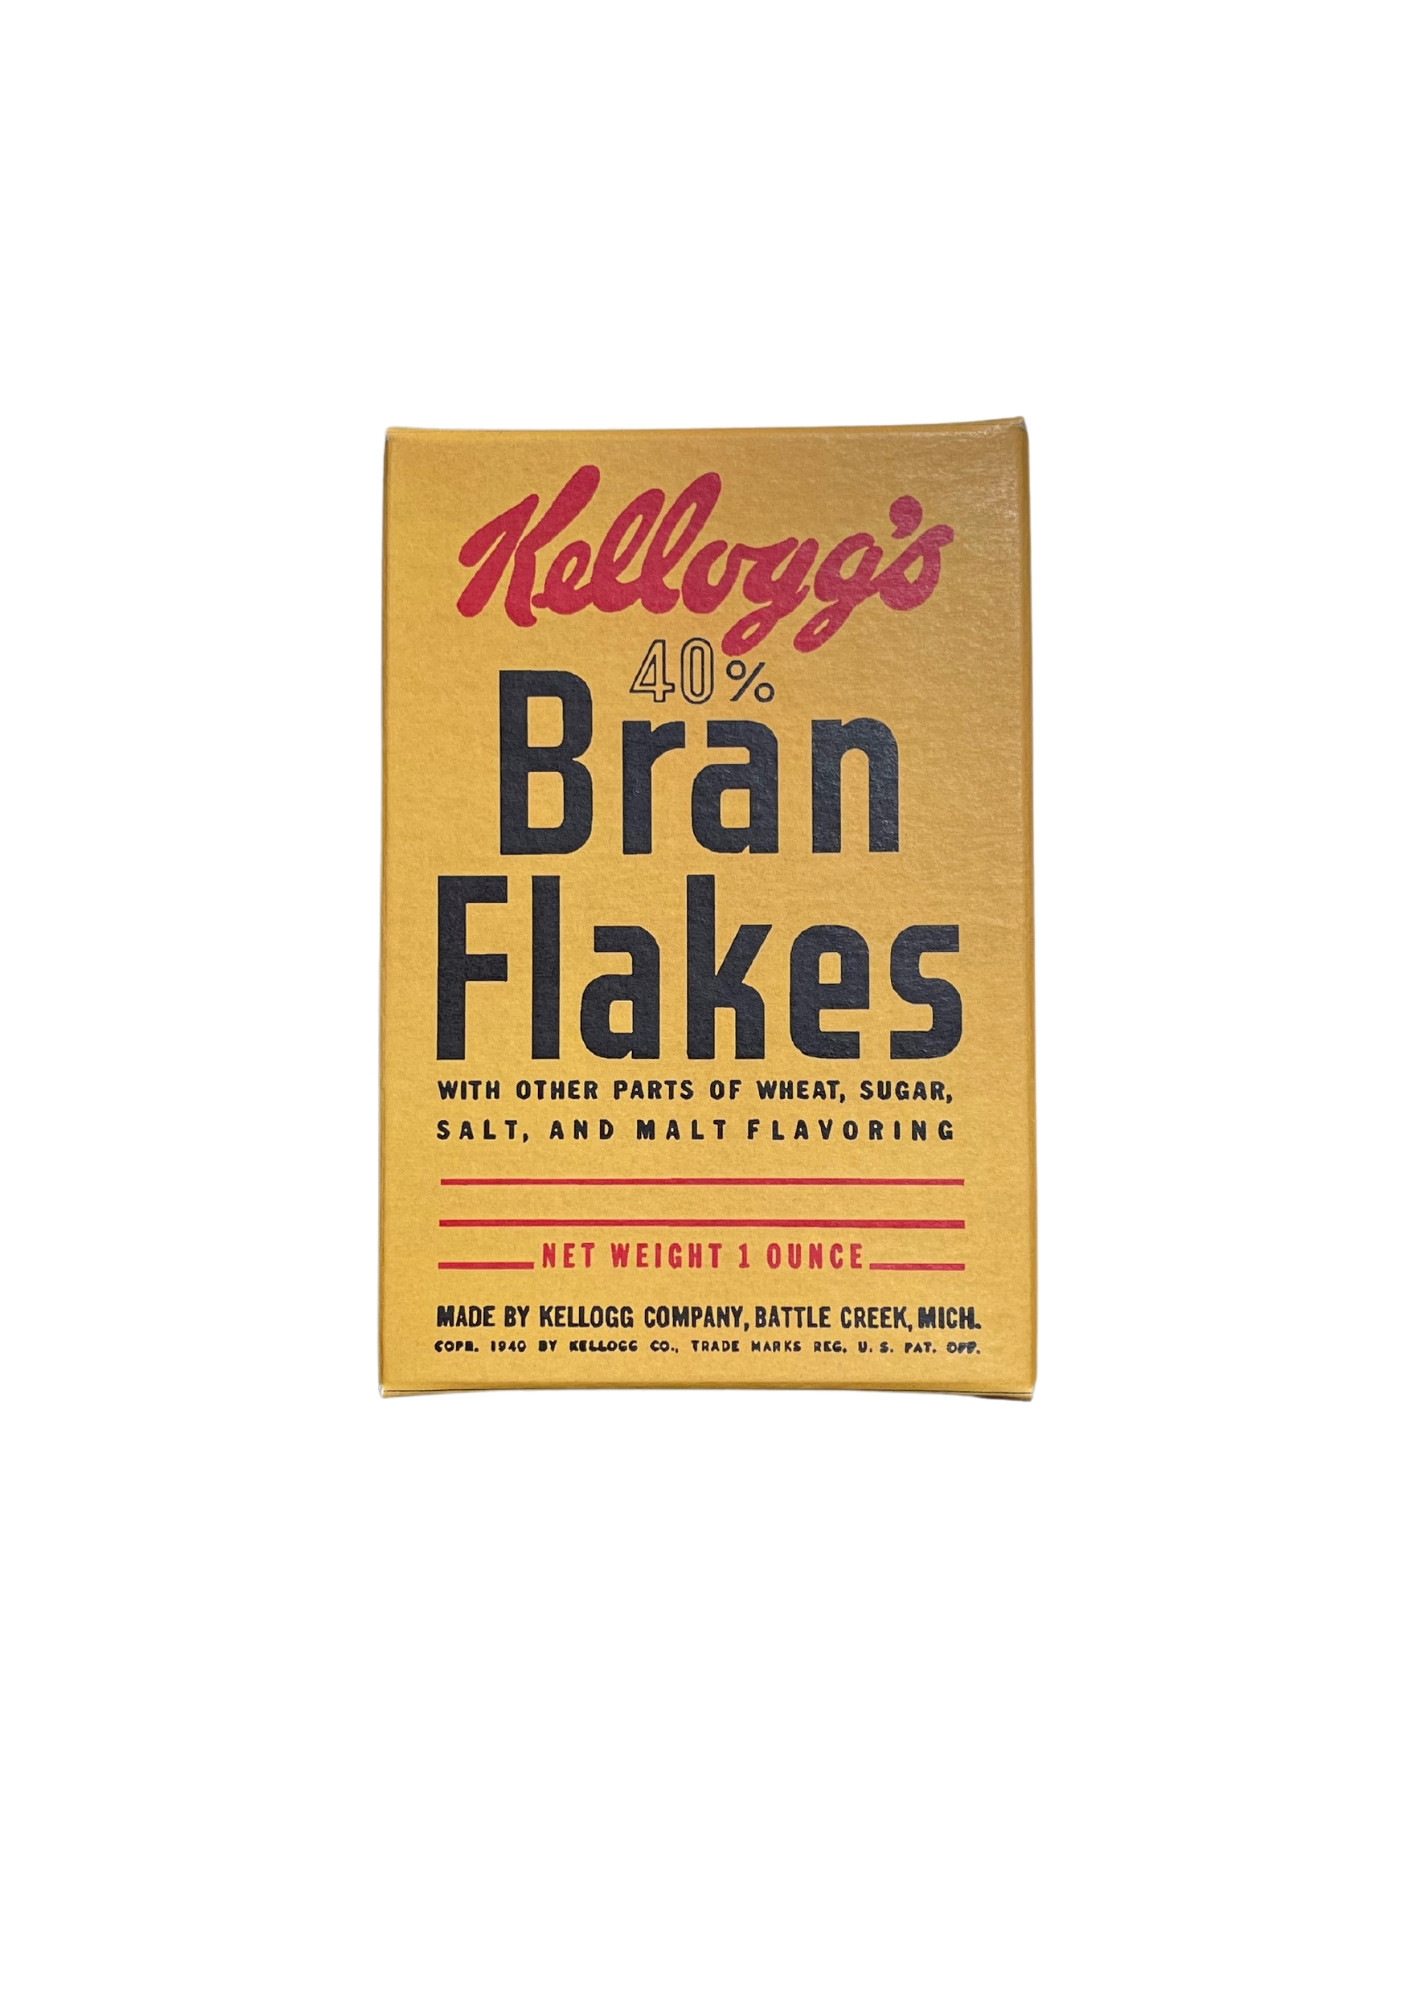 Kellogg’s Bran Flakes